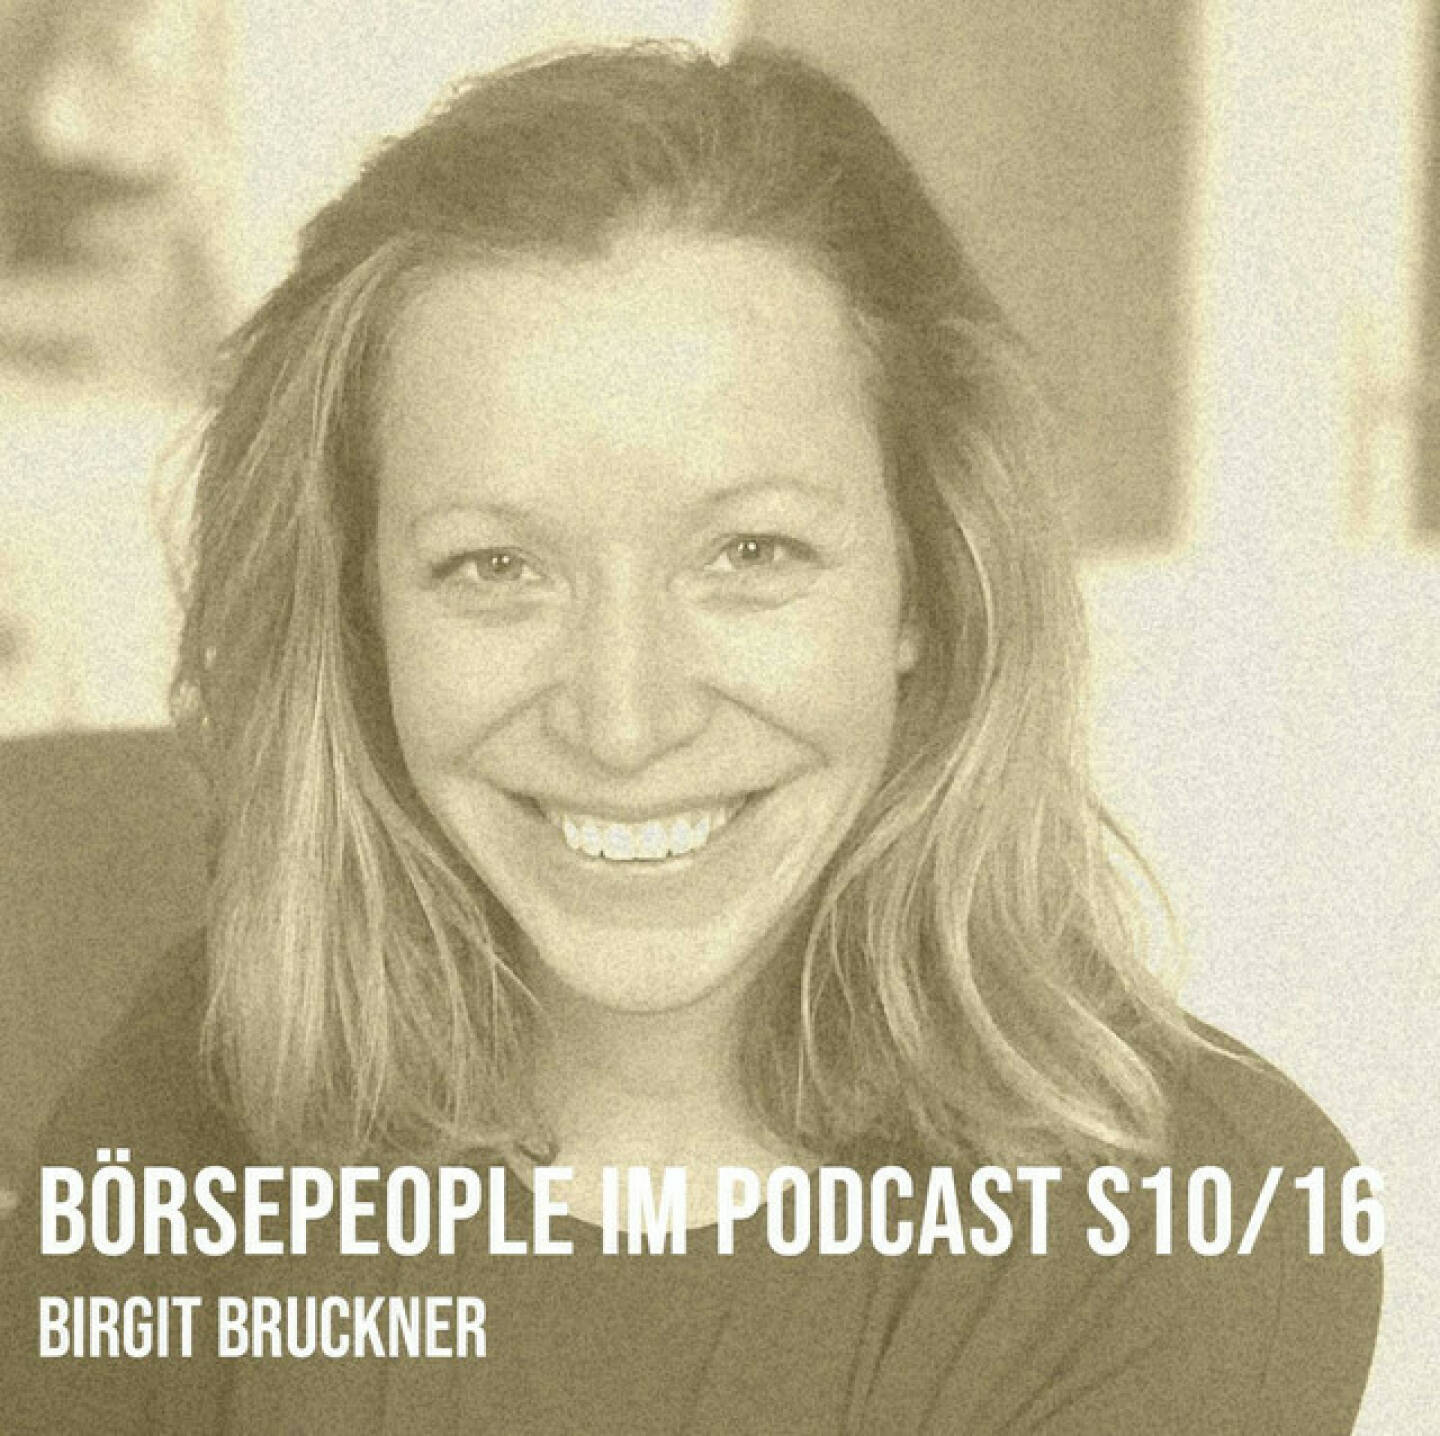 https://open.spotify.com/episode/5OmNdsZFyVd9GXxy9DvrdU
Börsepeople im Podcast S10/16: Birgit Bruckner - <p>Birgit Bruckner ist Finanzpsychologin, sie beschäftigt sich damit , wie wir in Finanzdingen bessere Entscheidungen treffen können. Es begann als Psychologin noch ohne Finanz, mit u.a. einer Hindsight Bias Arbeit zu Nationalratswahlen, dann kam das quereinsteigende Reinstolpern in einen Empfangsbereich der Bankbranche, Stichworte M&amp;A Bank, Alizee Bank, aber auch Ausbildungen im Zusammenhang mit Xetra, CIIA, CEFA oder ÖVFA. Wir sprechen über die Wichtigkeit, Real Money zu sein, um die Dinge zu spüren und vieles mehr. 2011 dann die Selbstständigkeit mit Element B, B wie Birgit wie Bruckner wie das Element Bor, saisongerecht eingesetzt für Feuerwerkskörper. Und Being Boring von den Pet Shop Boys muss ich zu Bor auch ansingen, vor allem weil der Song auf dem Album Behaviour drauf ist und Birgit wurde ja nach und nach zur ersten Adresse für Behavourial Finance in Österreich, auf vielen Verstaltungen und Schulungen on stage, ihre Website Mindest Money liefert viele Showcases samt hörenswertem Podcast. Ach ja, Master of Science ist auch. Erwähnt werden zudem Schwarze Schwäne, Musterdepots, Fomo, und der nächste Kursstart mit Birgit für Wifi Wien und Wiener Börse Akademie. Börse ist wie Radfahren.<br/><br/>mindset-money.at<br/><br/>elementb.at <br/><br/>Next Start 30.1. Mit Börsenpsycholgin zur mehr Erfolg - <a href=http://www.wifiwien.at/39338x target=_blank>http://www.wifiwien.at/39338x</a> <br/><br/>About: Die Serie Börsepeople findet im Rahmen von <a href=http://www.audio-cd.at target=_blank>http://www.audio-cd.at</a> und dem Podcast &#34;Audio-CD.at Indie Podcasts&#34; statt. Es handelt sich dabei um typische Personality- und Werdegang-Gespräche. Die Season 10 umfasst unter dem Motto „24 Börsepeople“ 24 Talks  Presenter der Season 10 ist die Bawag, <a href=https://www.bawaggroup.com/de target=_blank>https://www.bawaggroup.com/de</a> .Welcher der meistgehörte Börsepeople Podcast ist, sieht man unter <a href=http://www.audio-cd.at/people target=_blank>http://www.audio-cd.at/people.</a> Der Zwischenstand des laufenden Rankings ist tagesaktuell um 12 Uhr aktualisiert.<br/><br/>Bewertungen bei Apple (oder auch Spotify) machen mir Freude: <a href=https://podcasts.apple.com/at/podcast/audio-cd-at-indie-podcasts-wiener-boerse-sport-musik-und-mehr/id1484919130 target=_blank>https://podcasts.apple.com/at/podcast/audio-cd-at-indie-podcasts-wiener-boerse-sport-musik-und-mehr/id1484919130</a> .</p>